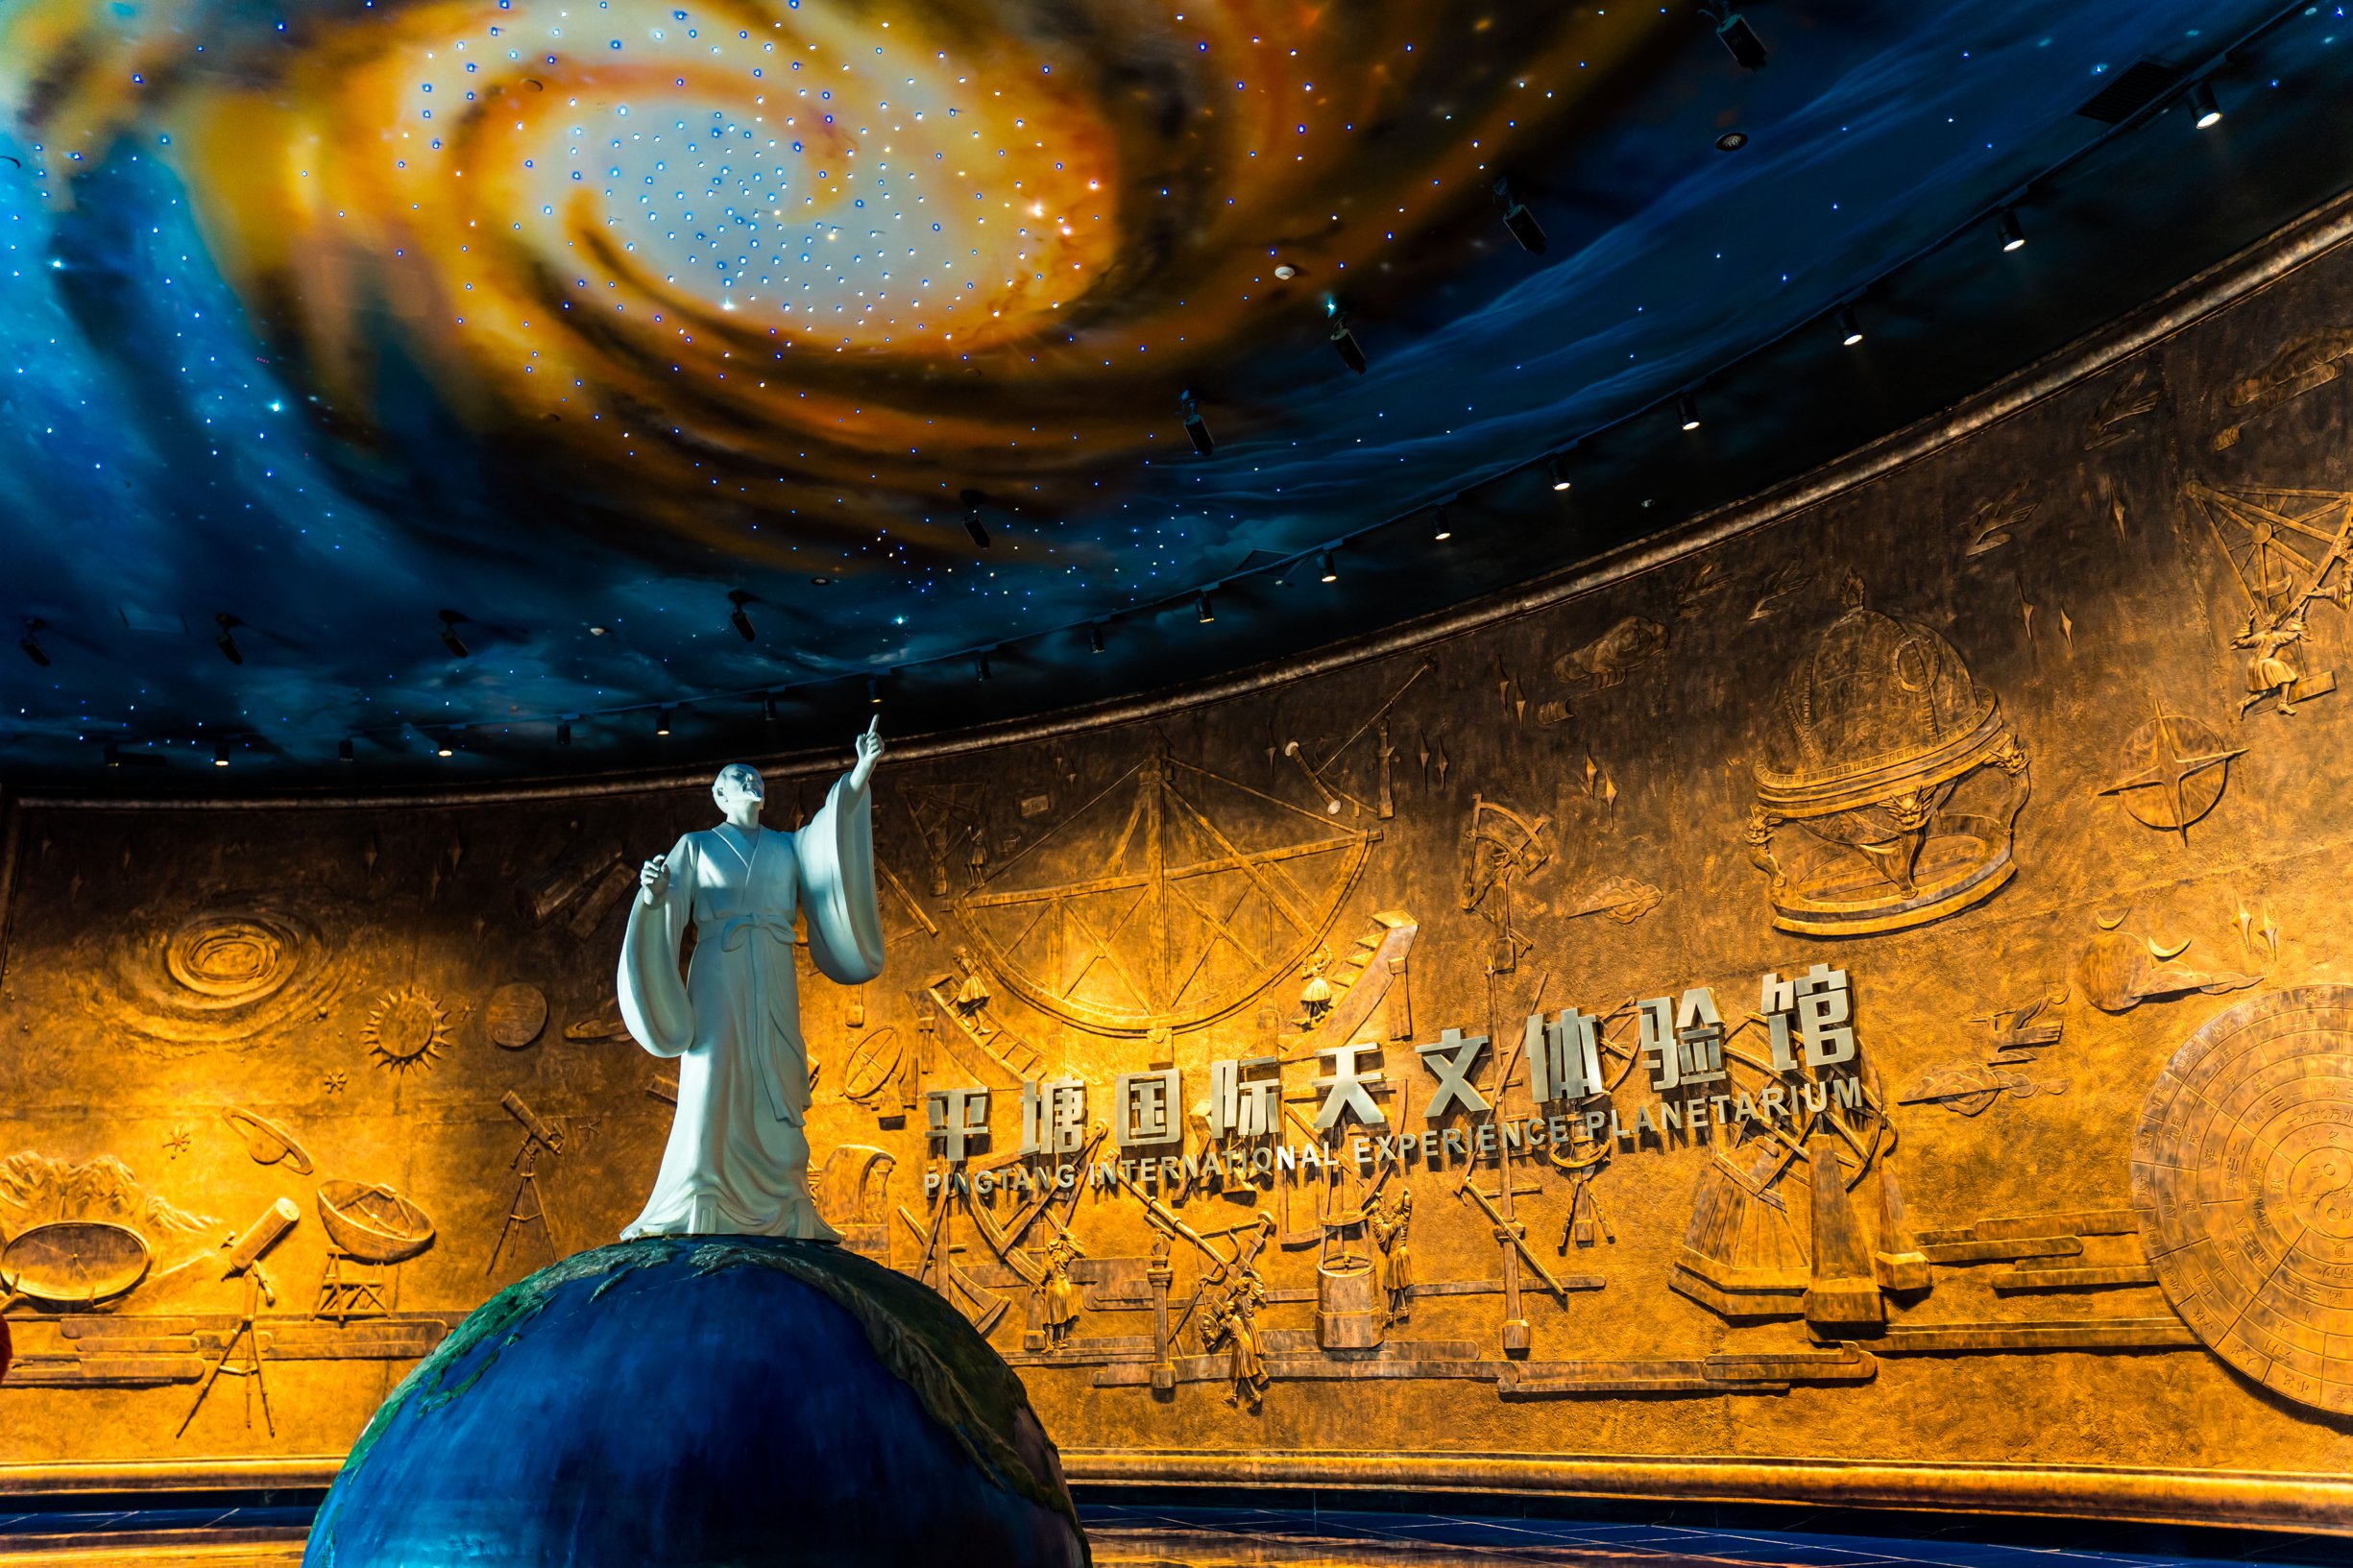 平塘国际天文体验馆是中国贵州省平塘县的一座天文馆，是一个现代化的天文科普工程。 是宣传中国天眼、世界